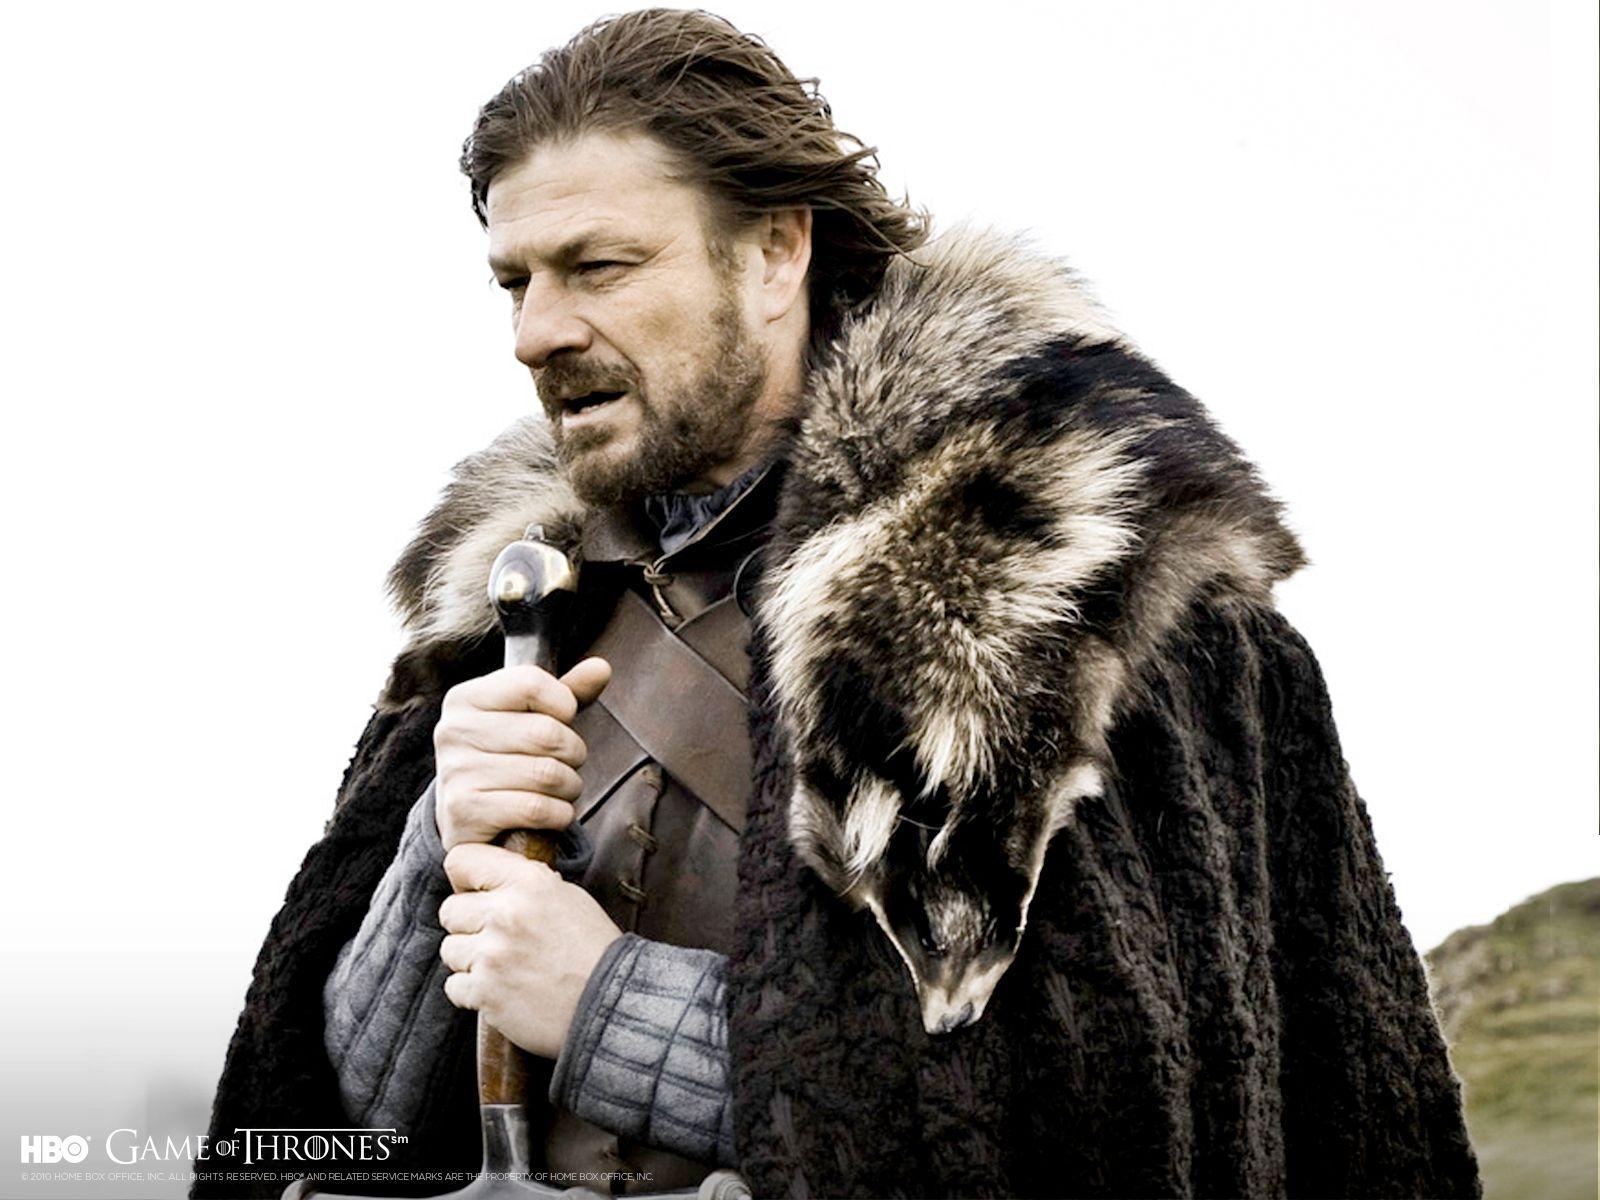 Winter is Coming Stark Wallpaper